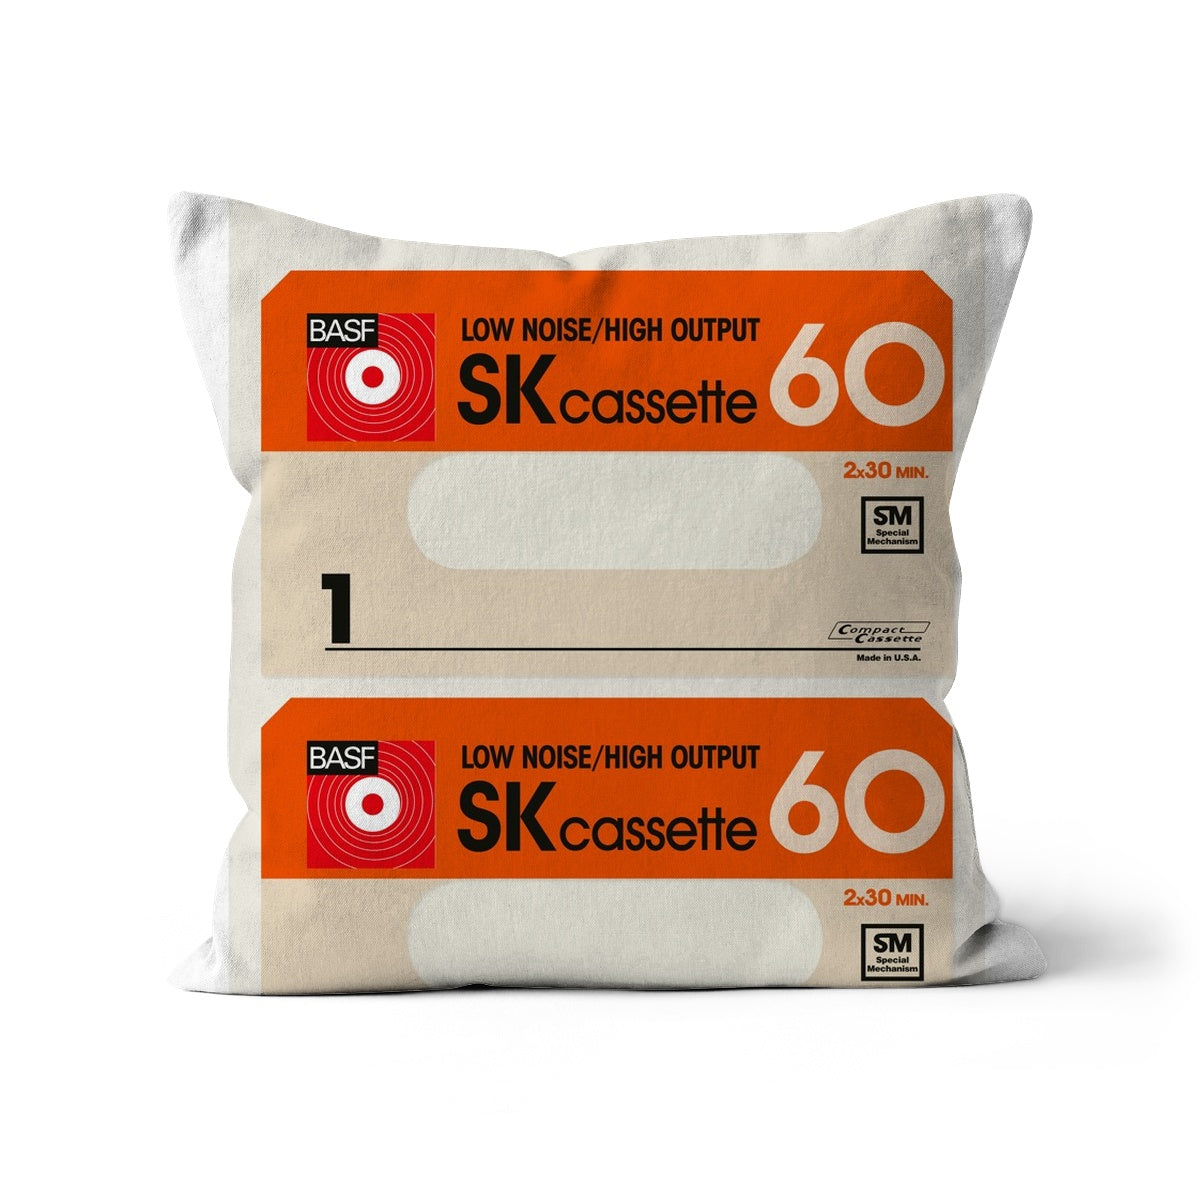 BASF SK Cassette 60  Cushion